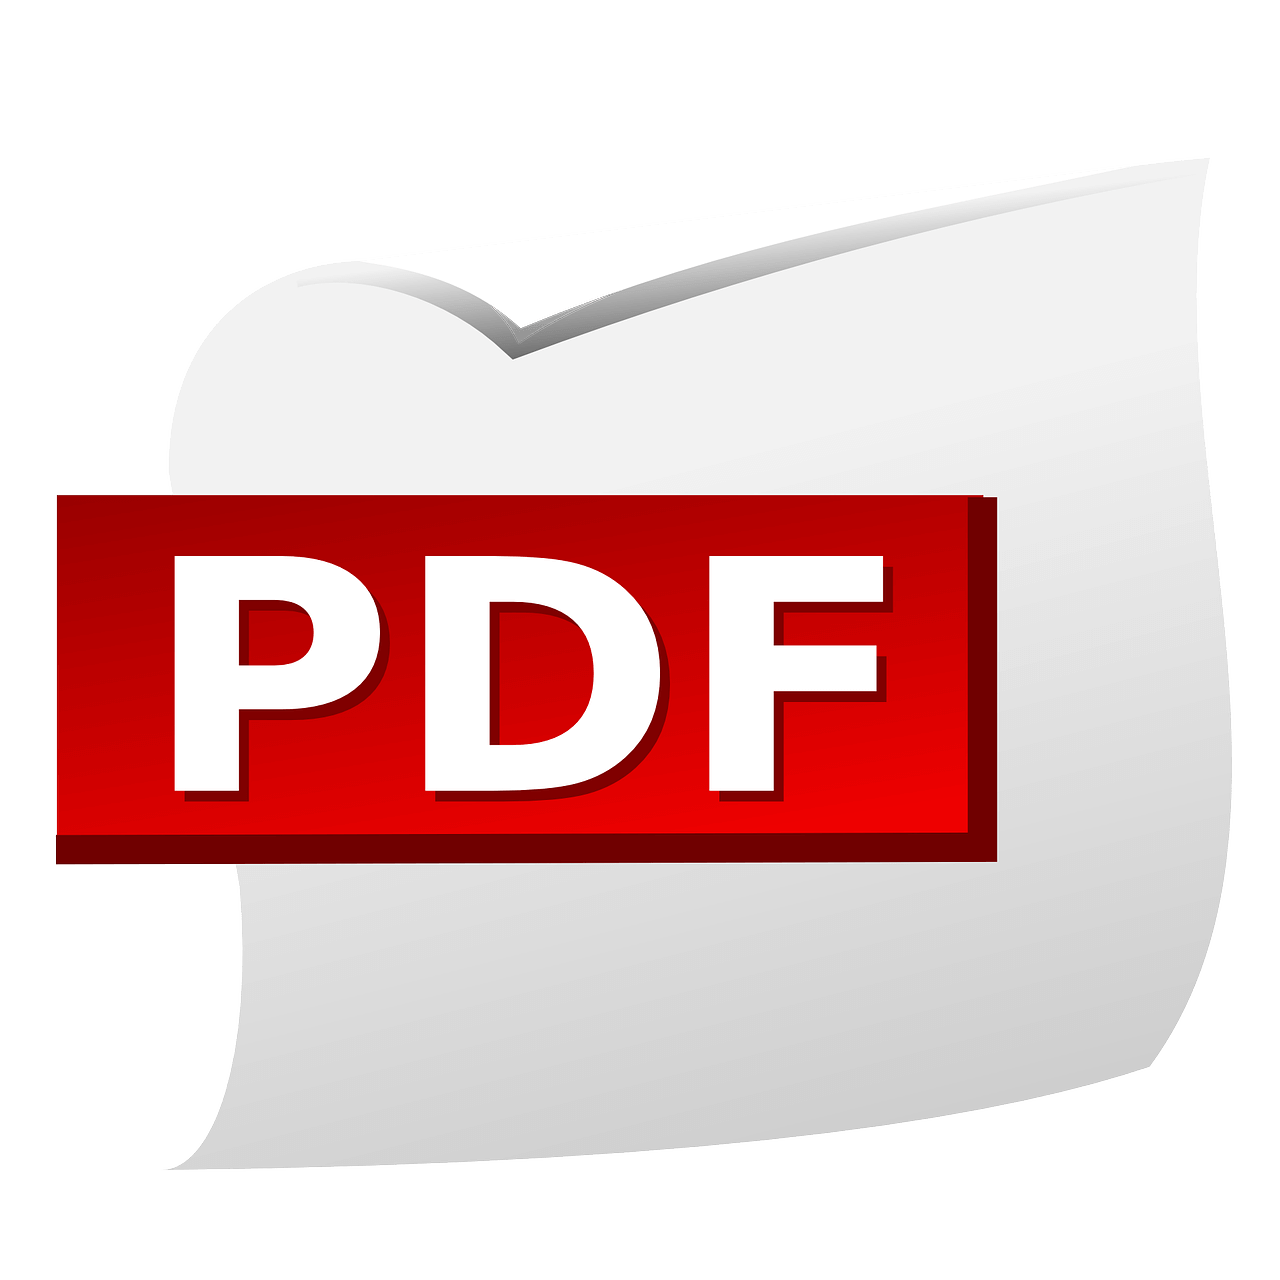 merge PDF tools